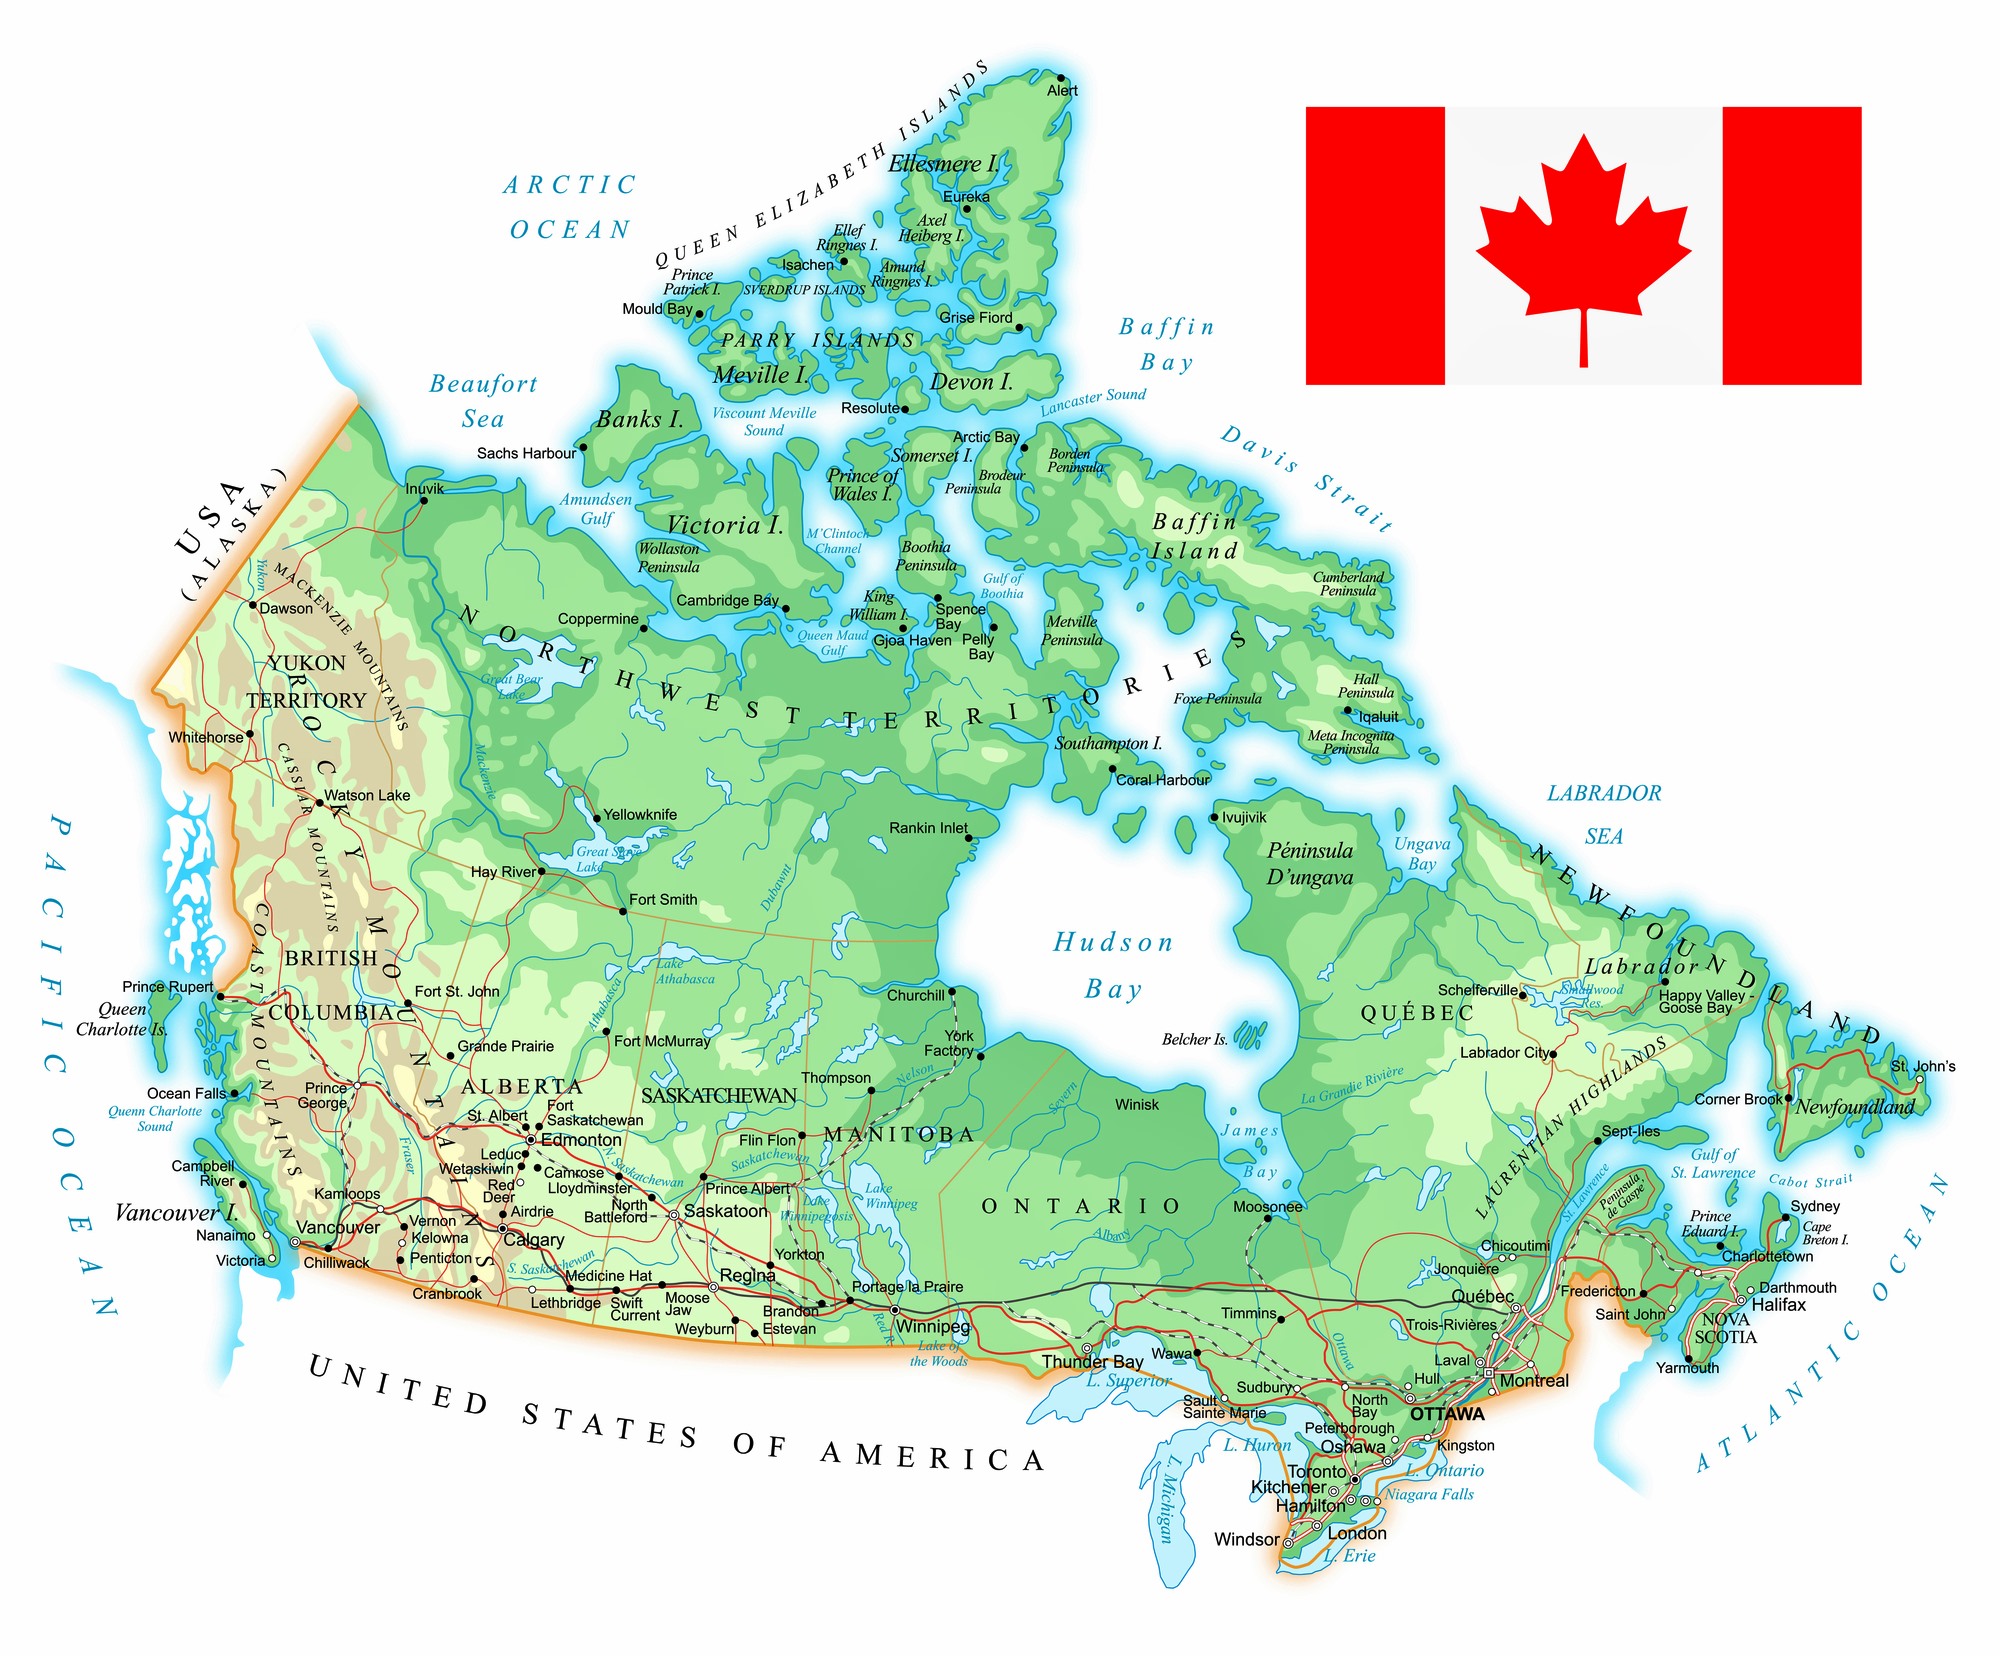 Karten von Kanada | Karten von Kanada zum Herunterladen und Drucken